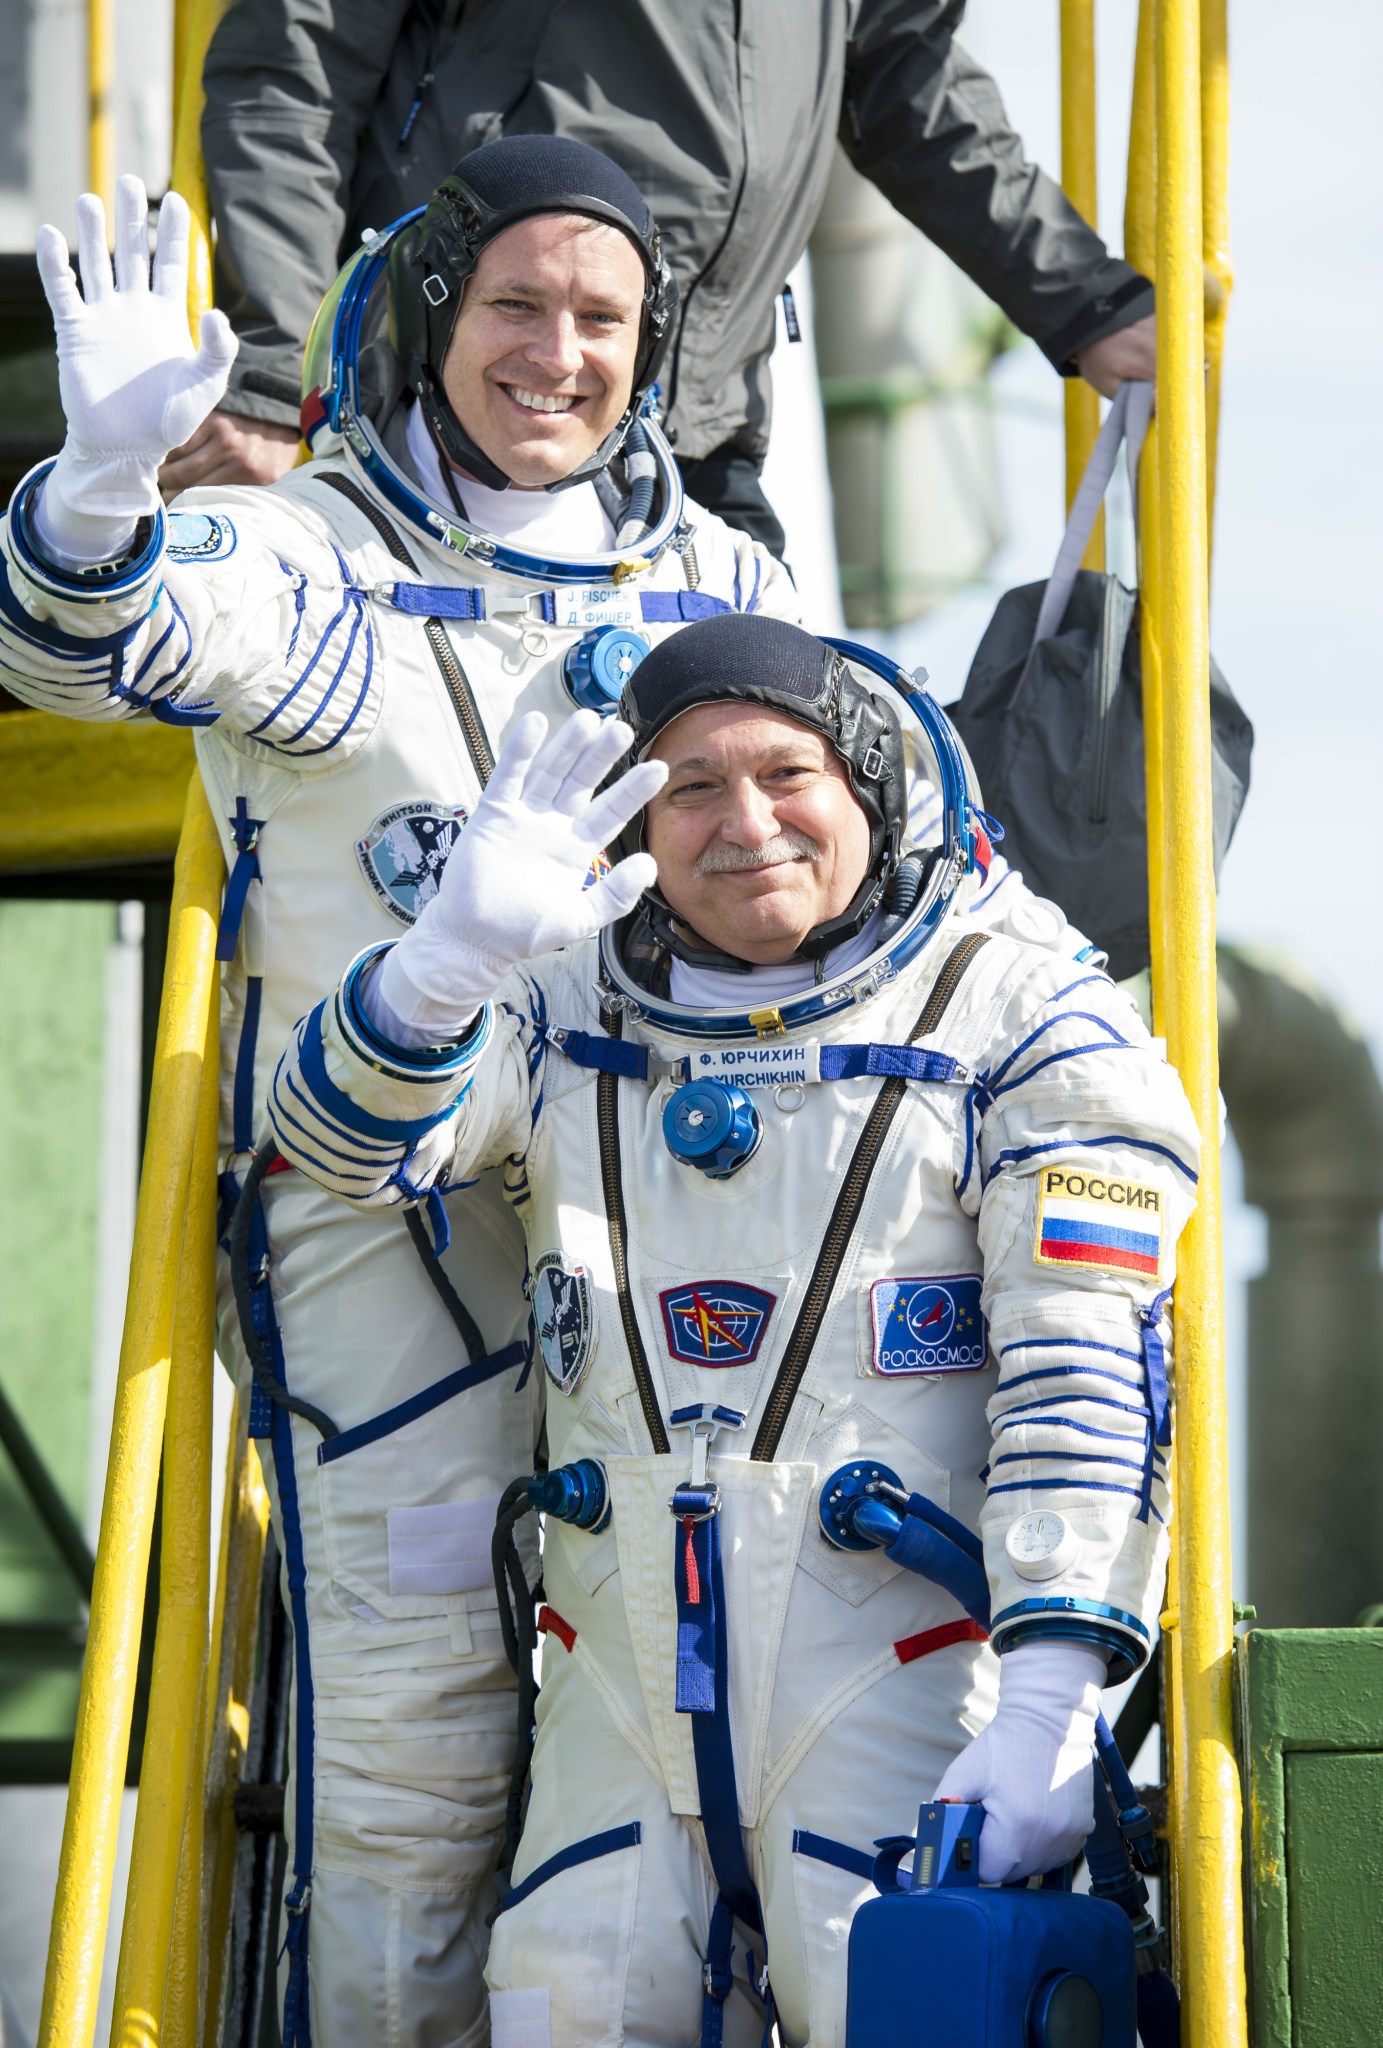 Expedition 51 Soyuz Commander Fyodor Yurchikhin of Roscosmos and Flight Engineer Jack Fischer of NASA 